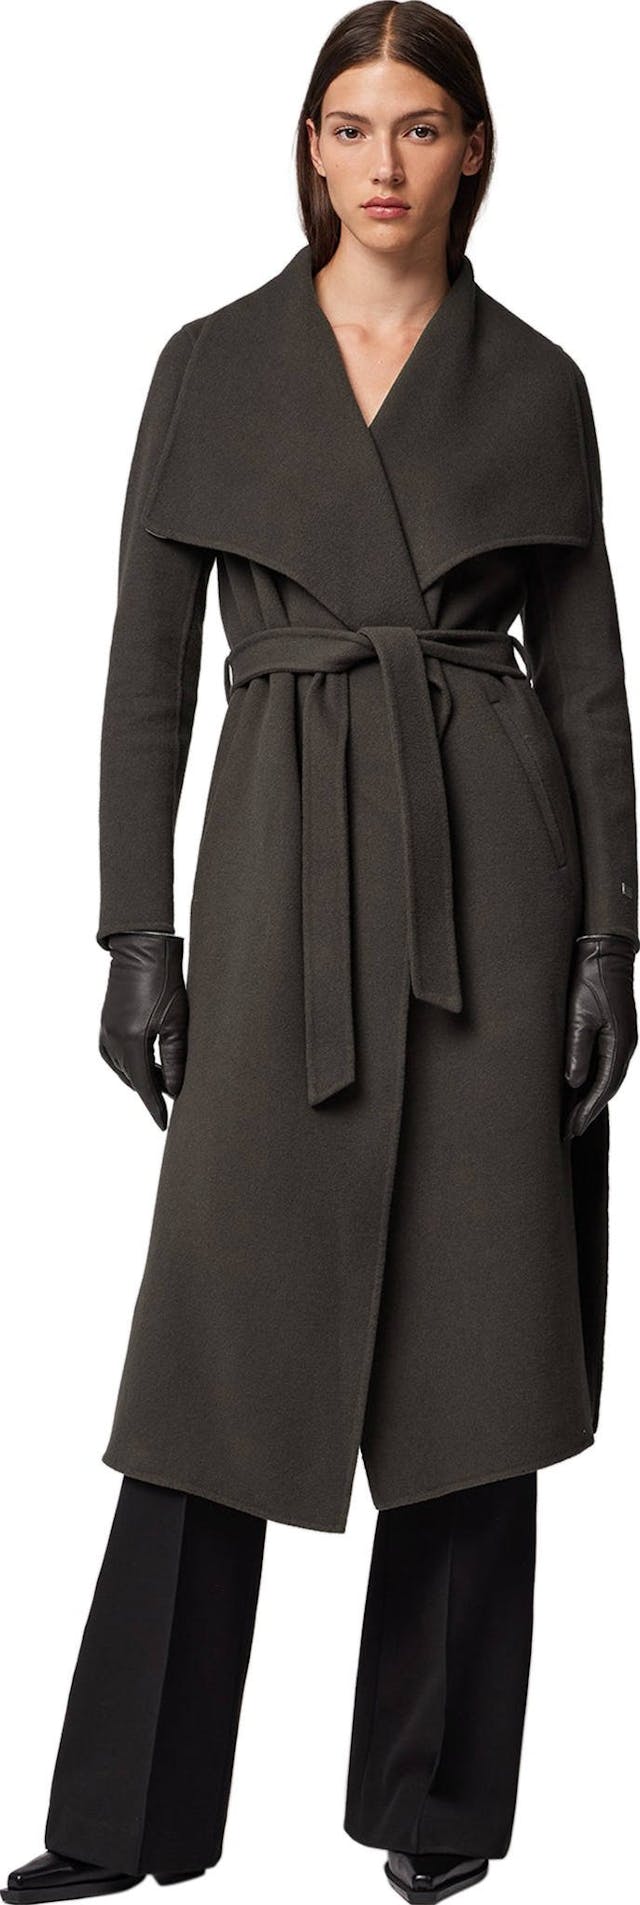 Image de produit pour Manteau en laine double face à coupe droite avec ceinture Britta - Femme